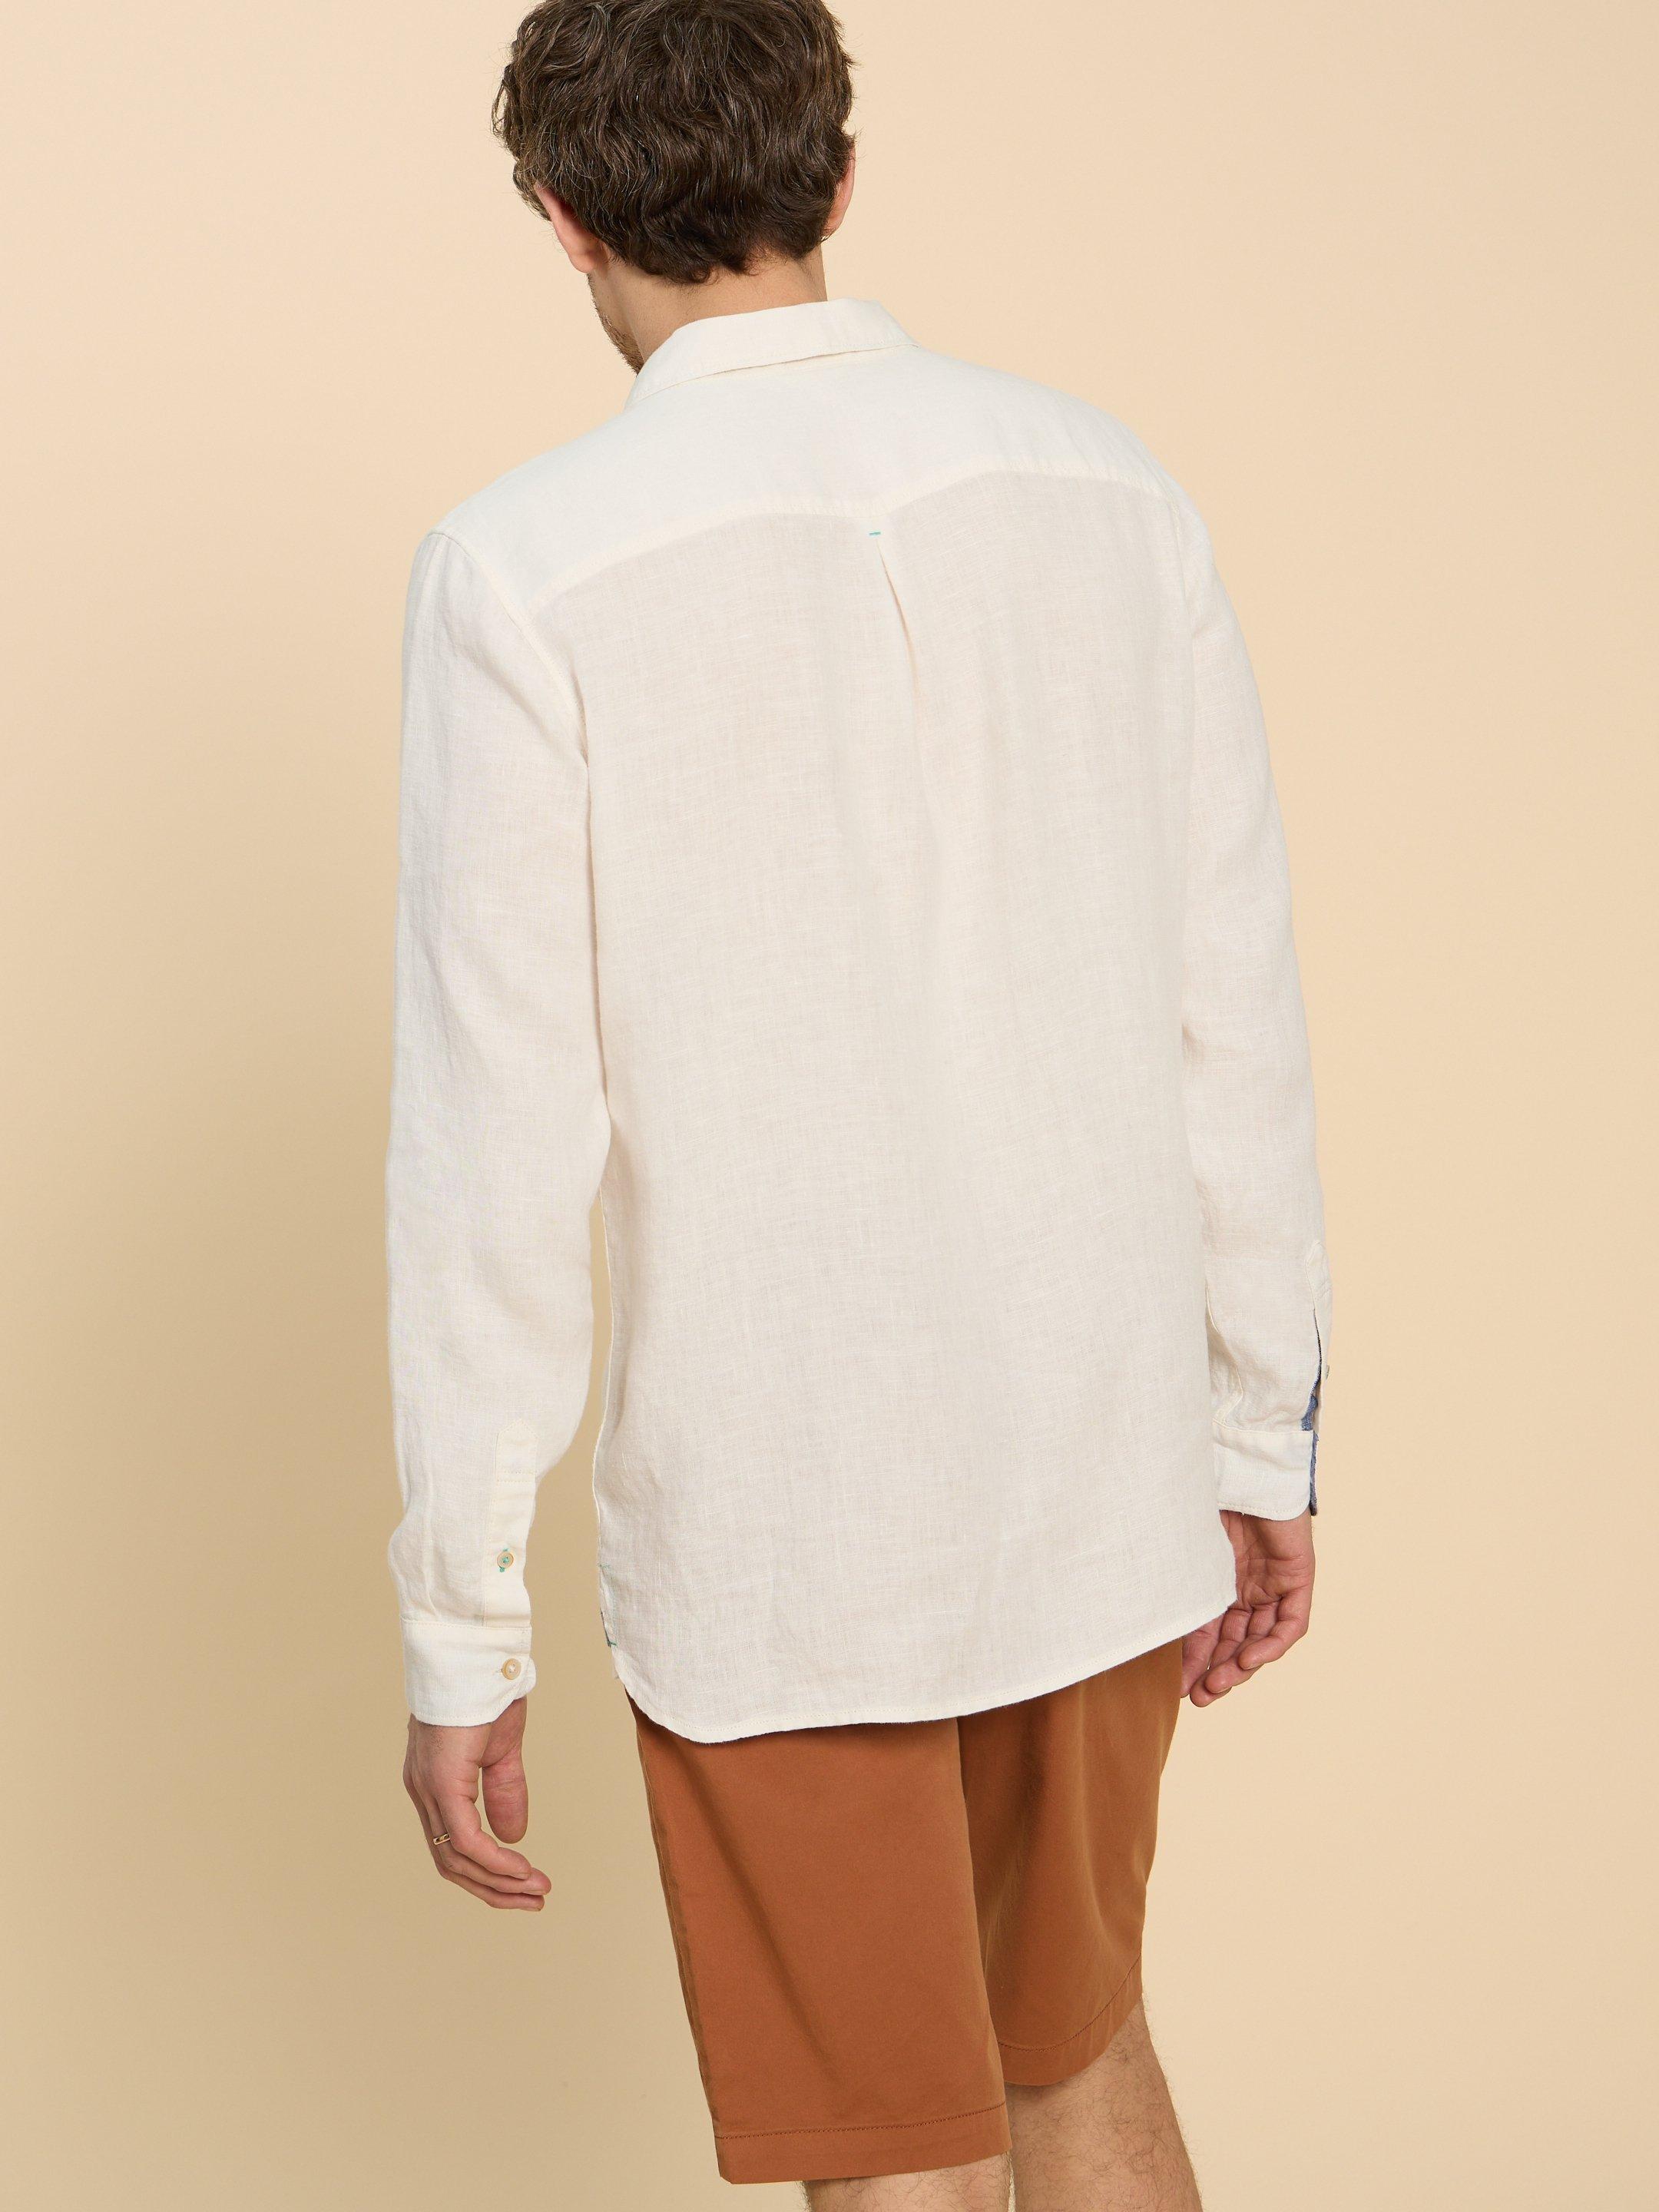 Pembroke LS Linen Shirt in BRIL WHITE - MODEL BACK